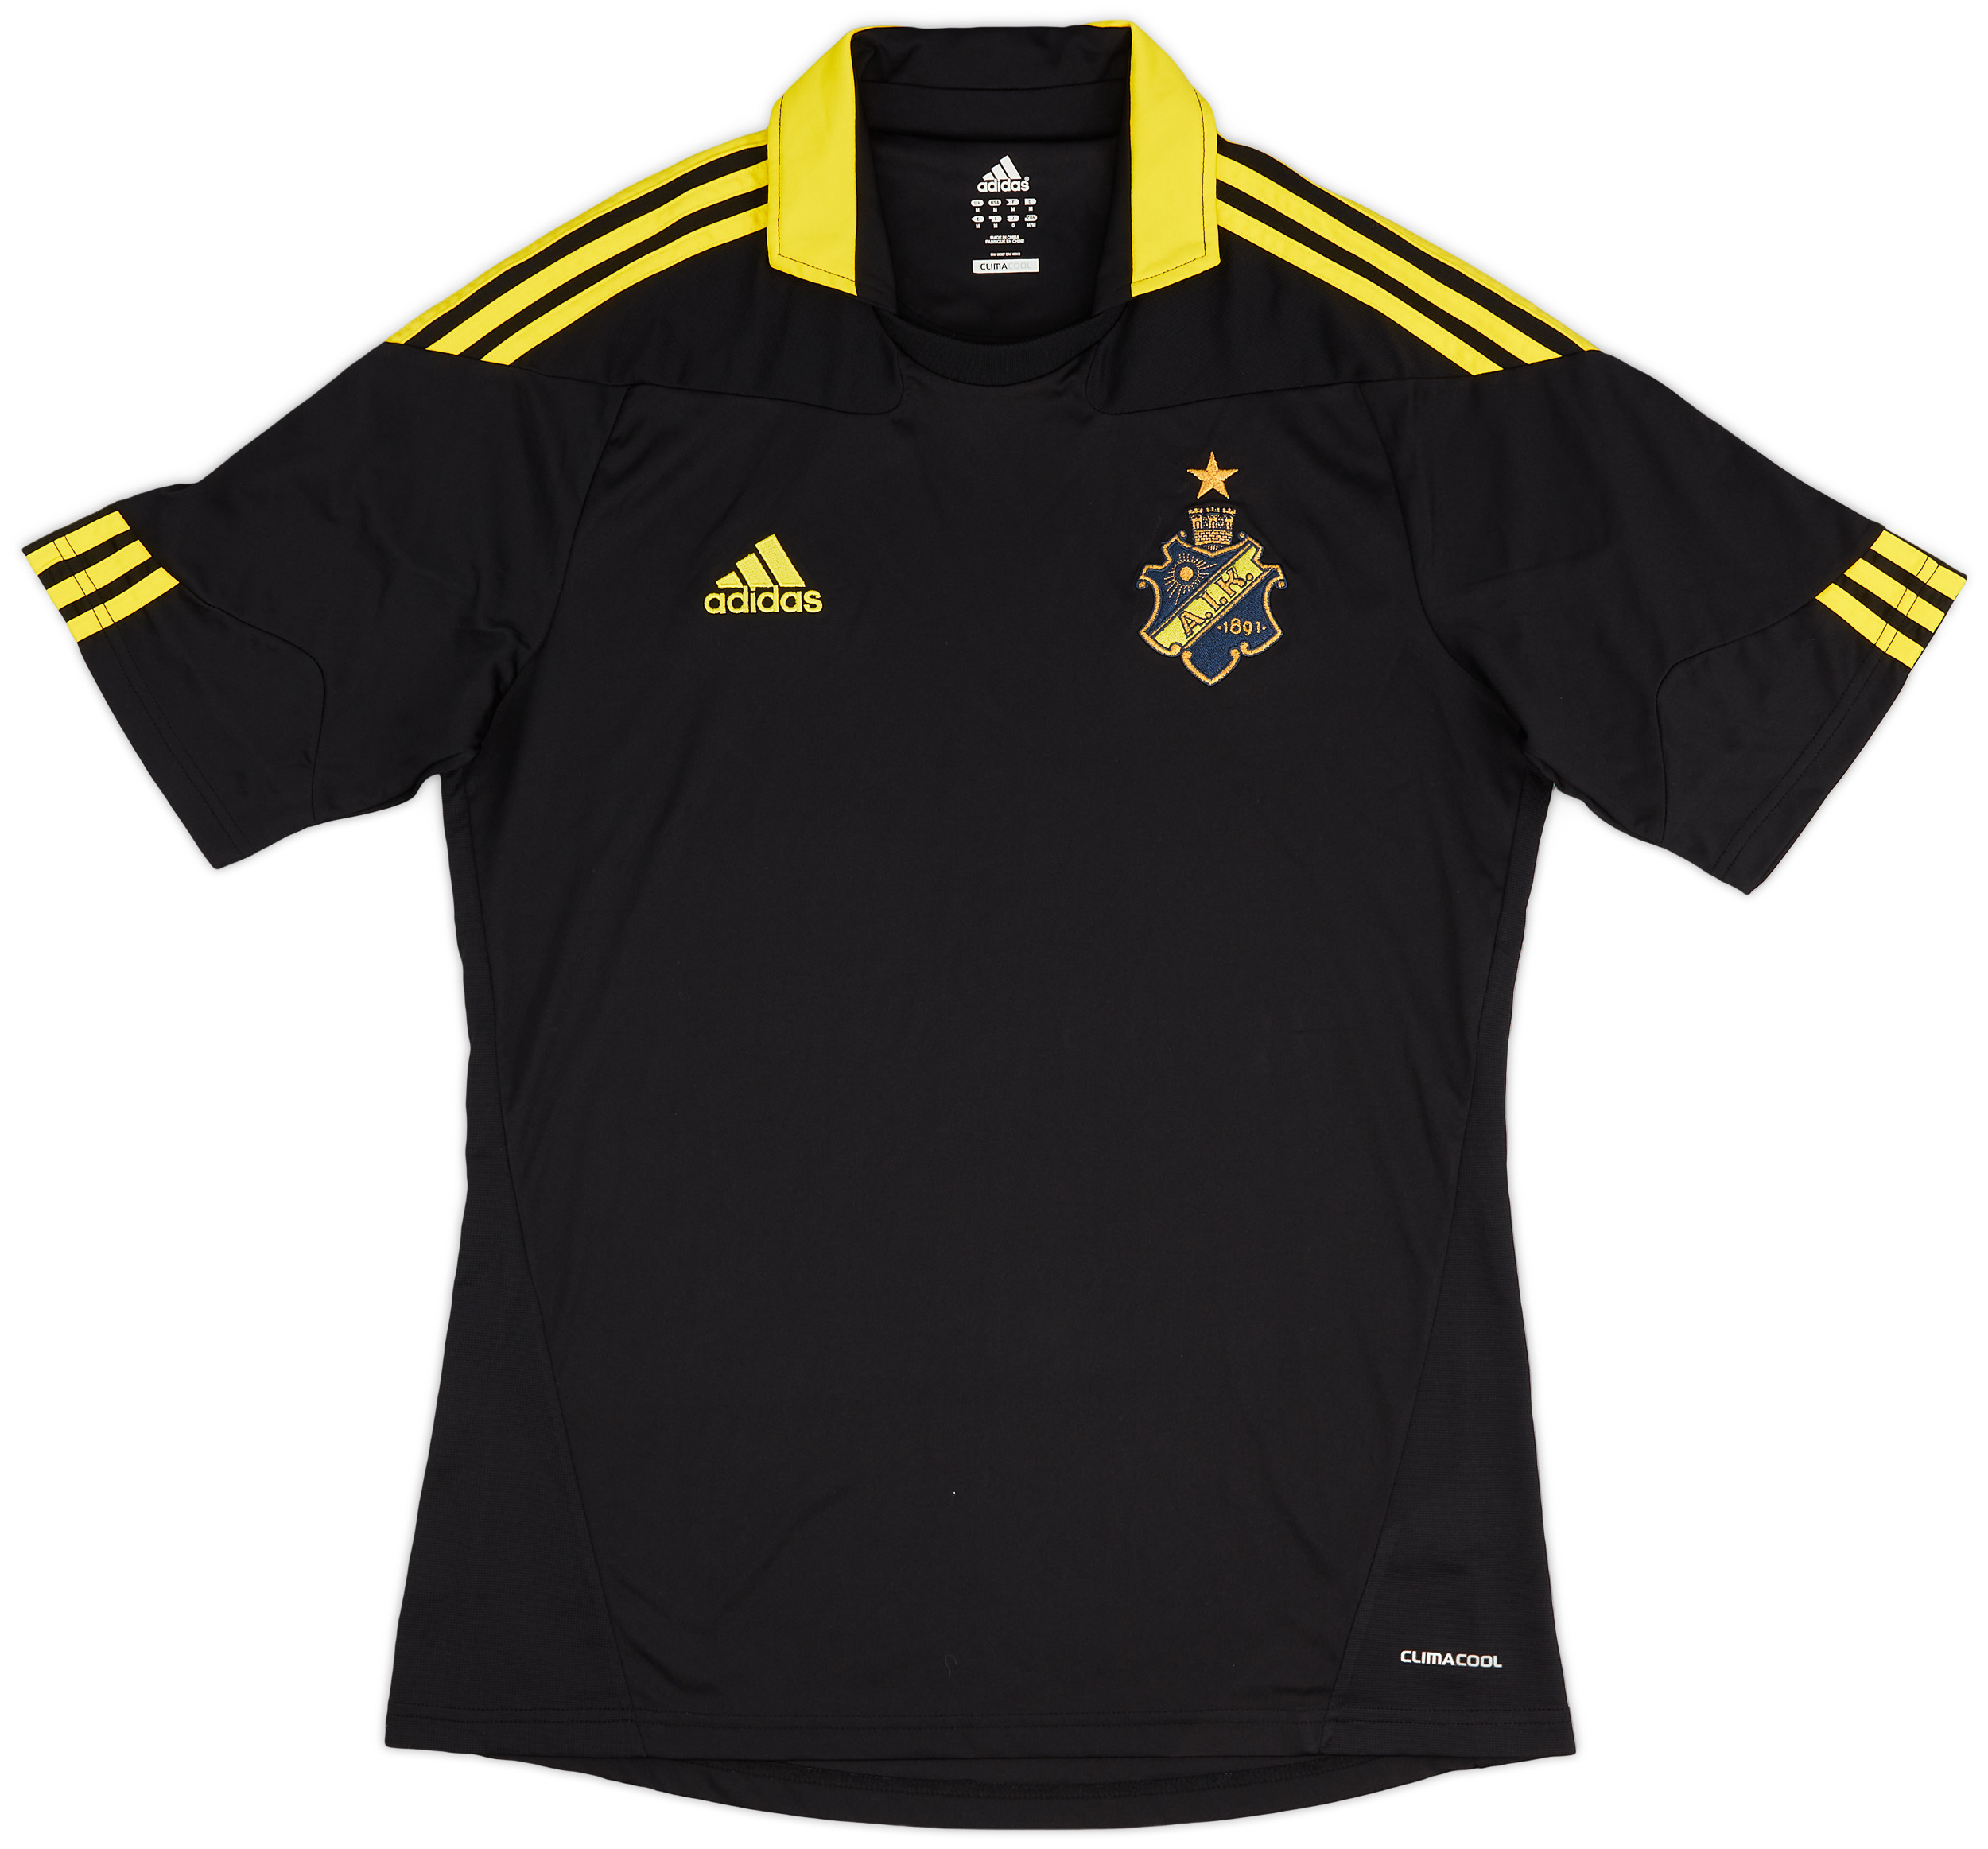 AIK Fotboll   home baju (Original)